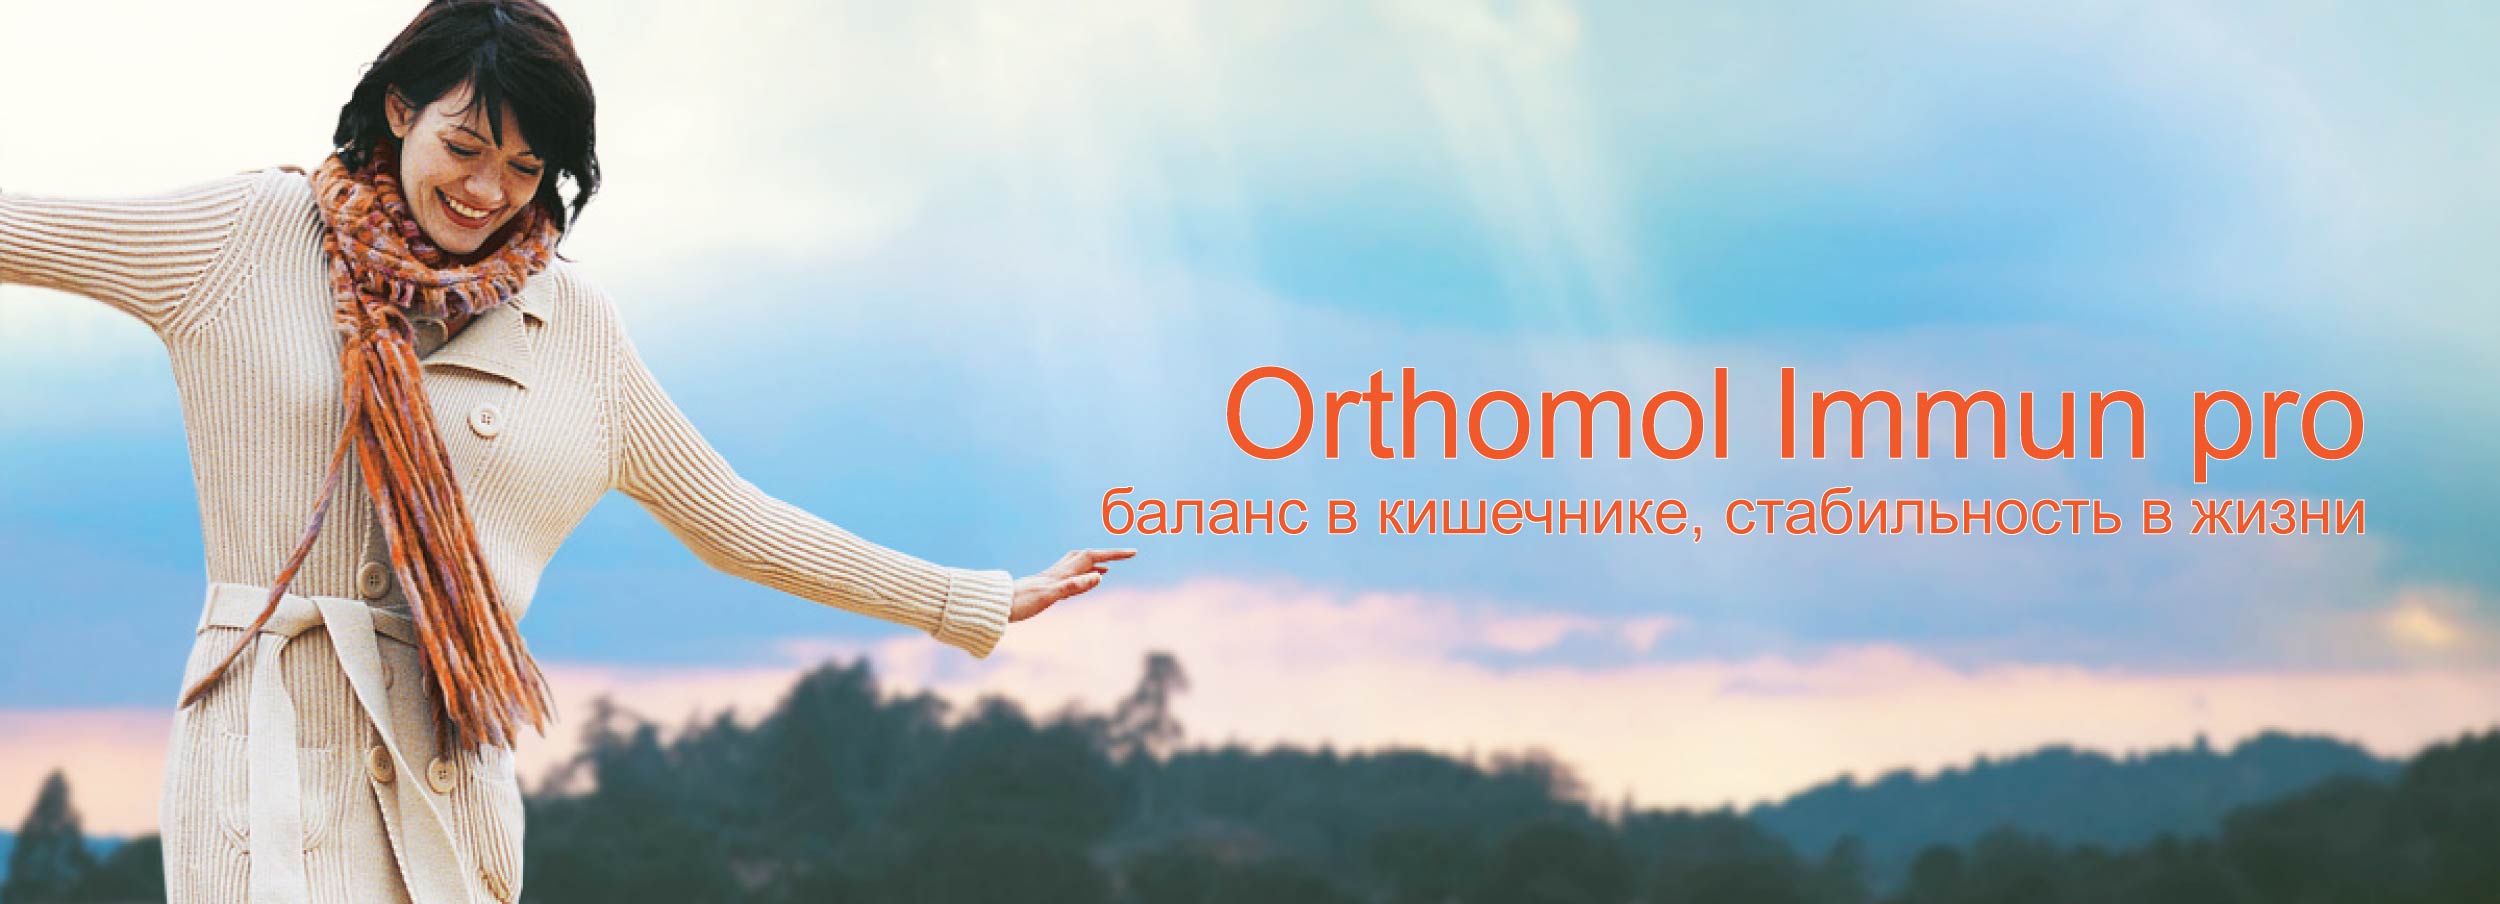 Orthomol immun pro dlya mikroflory kishechnika